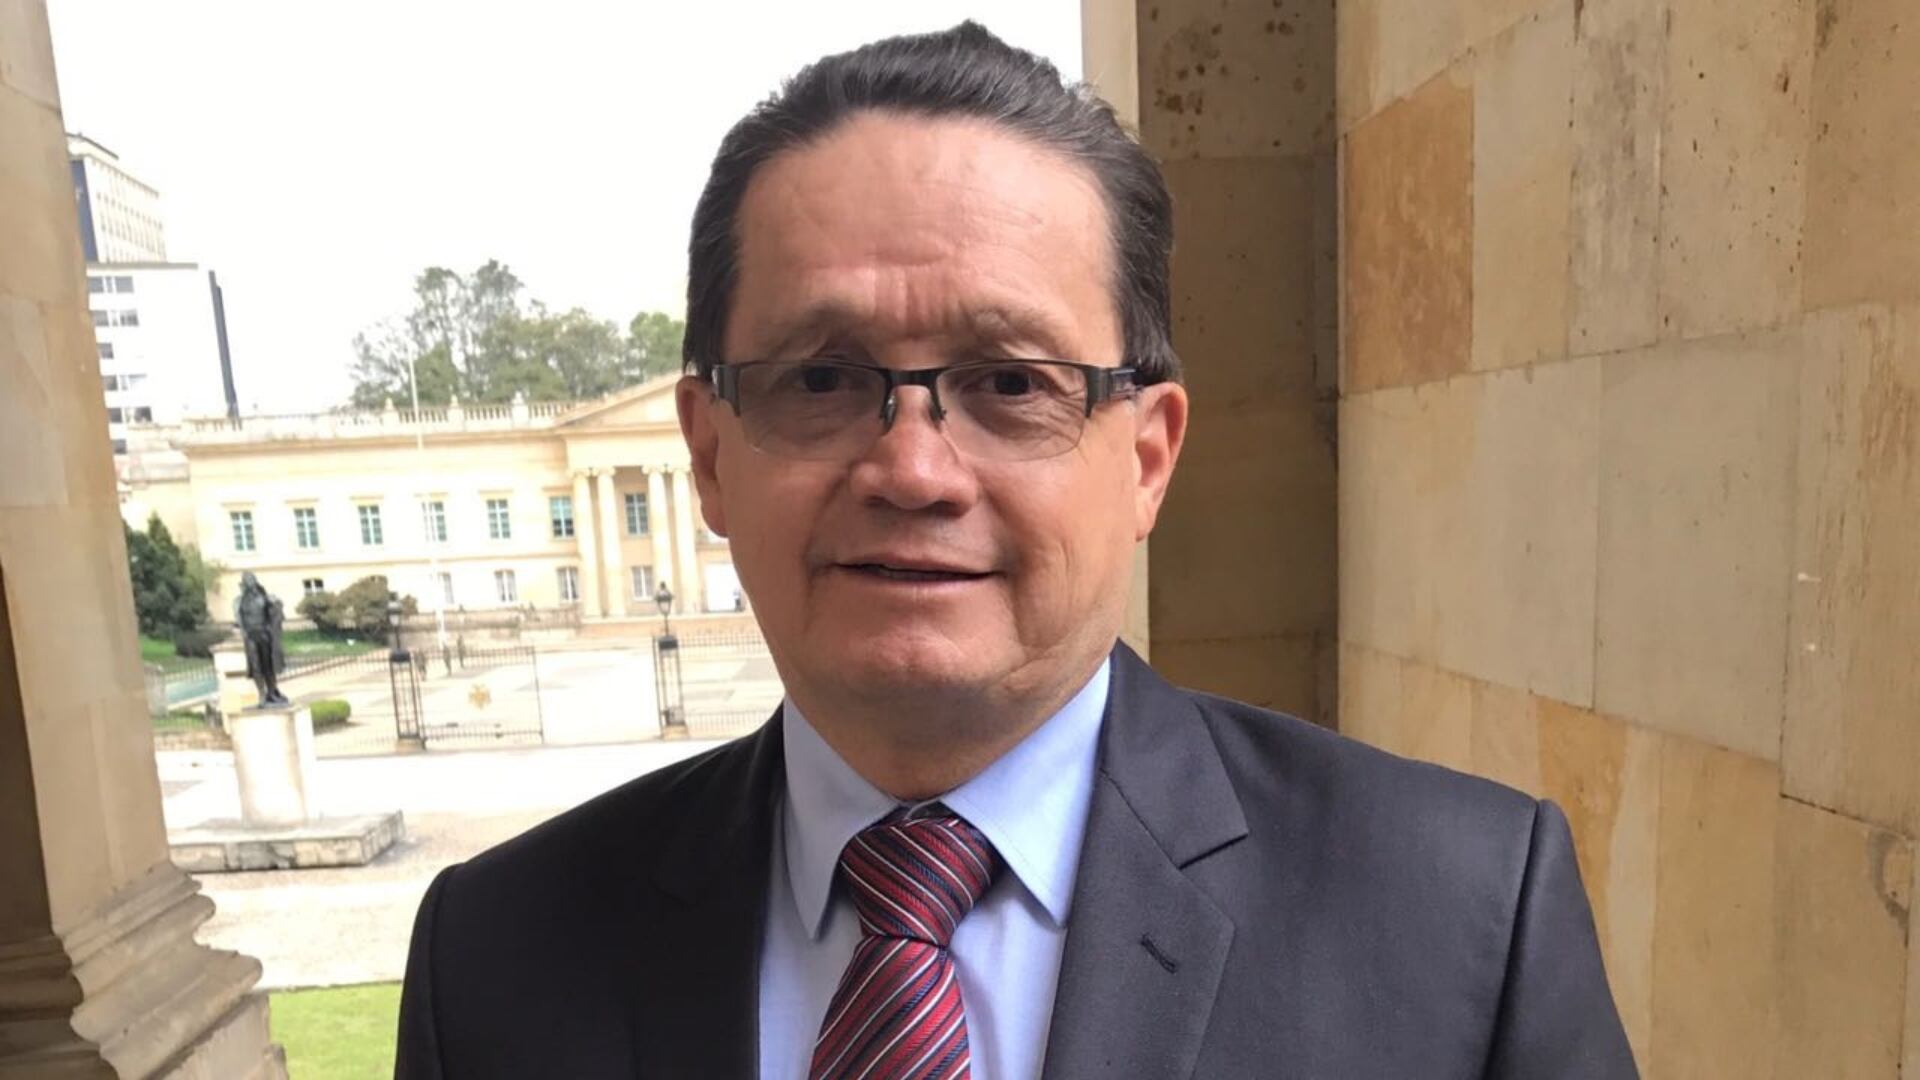 Guillermo García Realpe fue senador del Partido Liberal y del Bloque Pacífico de la Alianza IRI hasta julio de 2022. Ahora es el presidente de la Junta Directiva de Ecopetrol - crédito Universidad de Los Andes